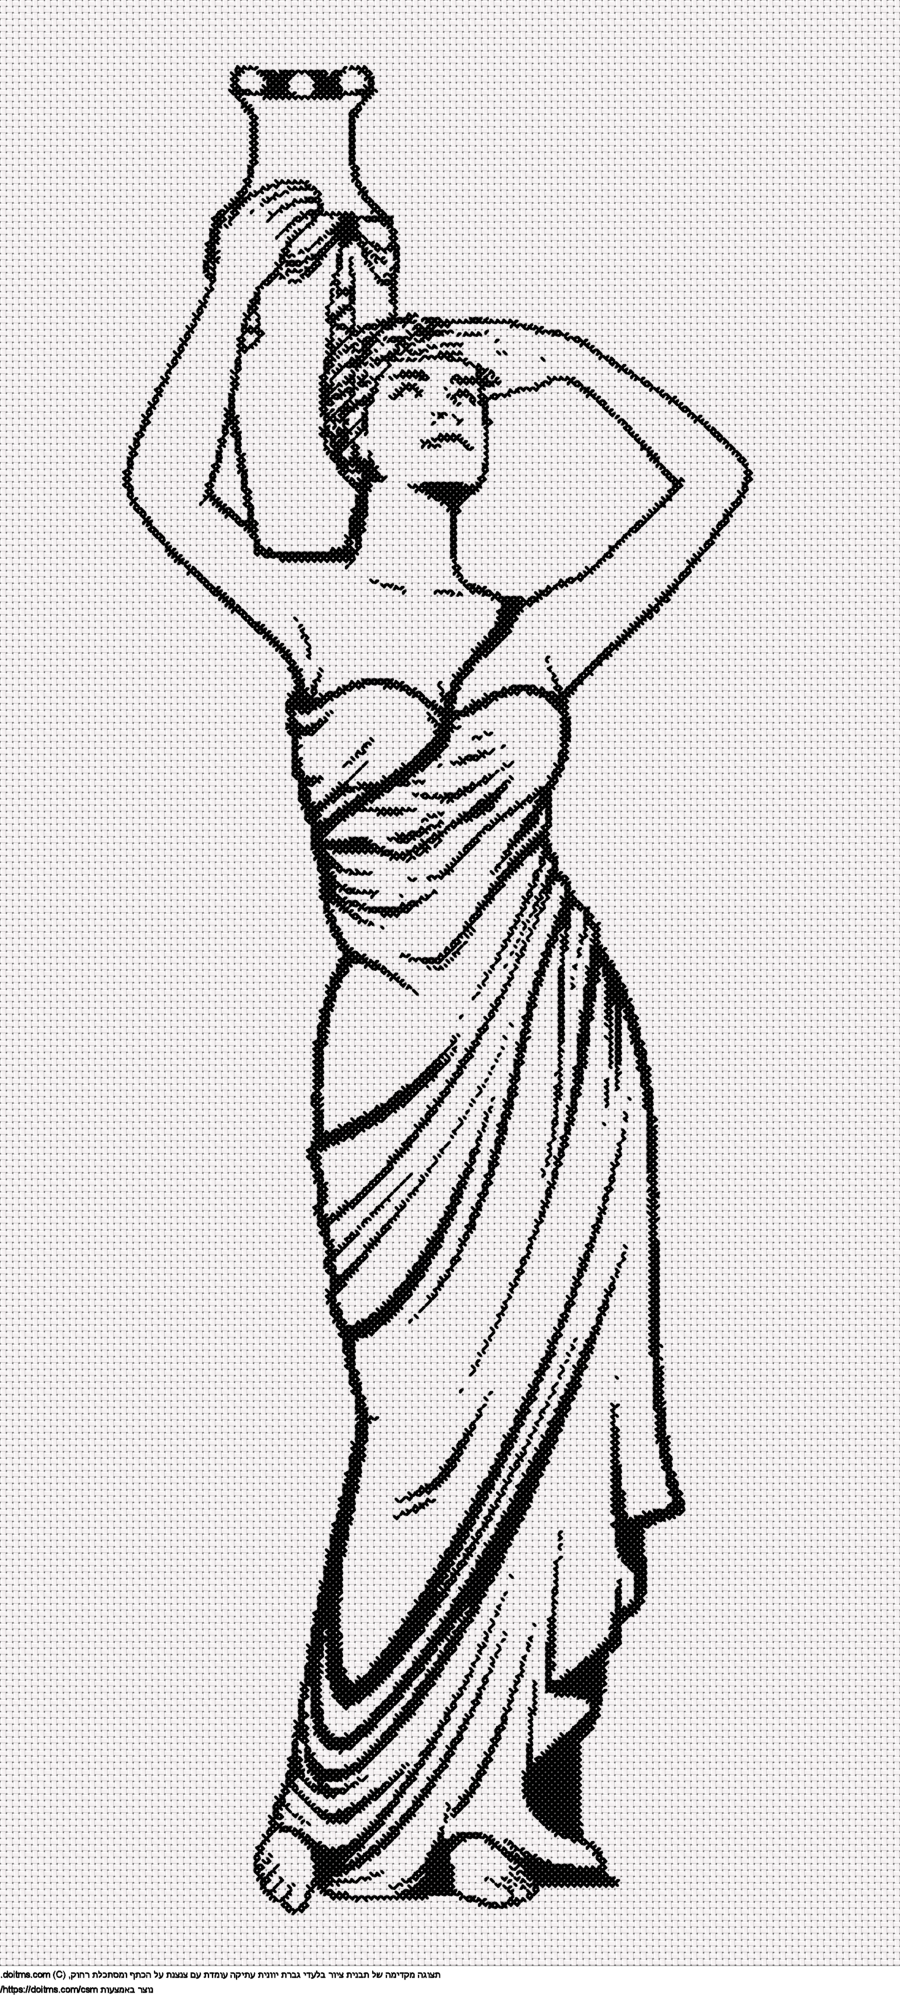 גברת יוונית עתיקה עם צנצנת